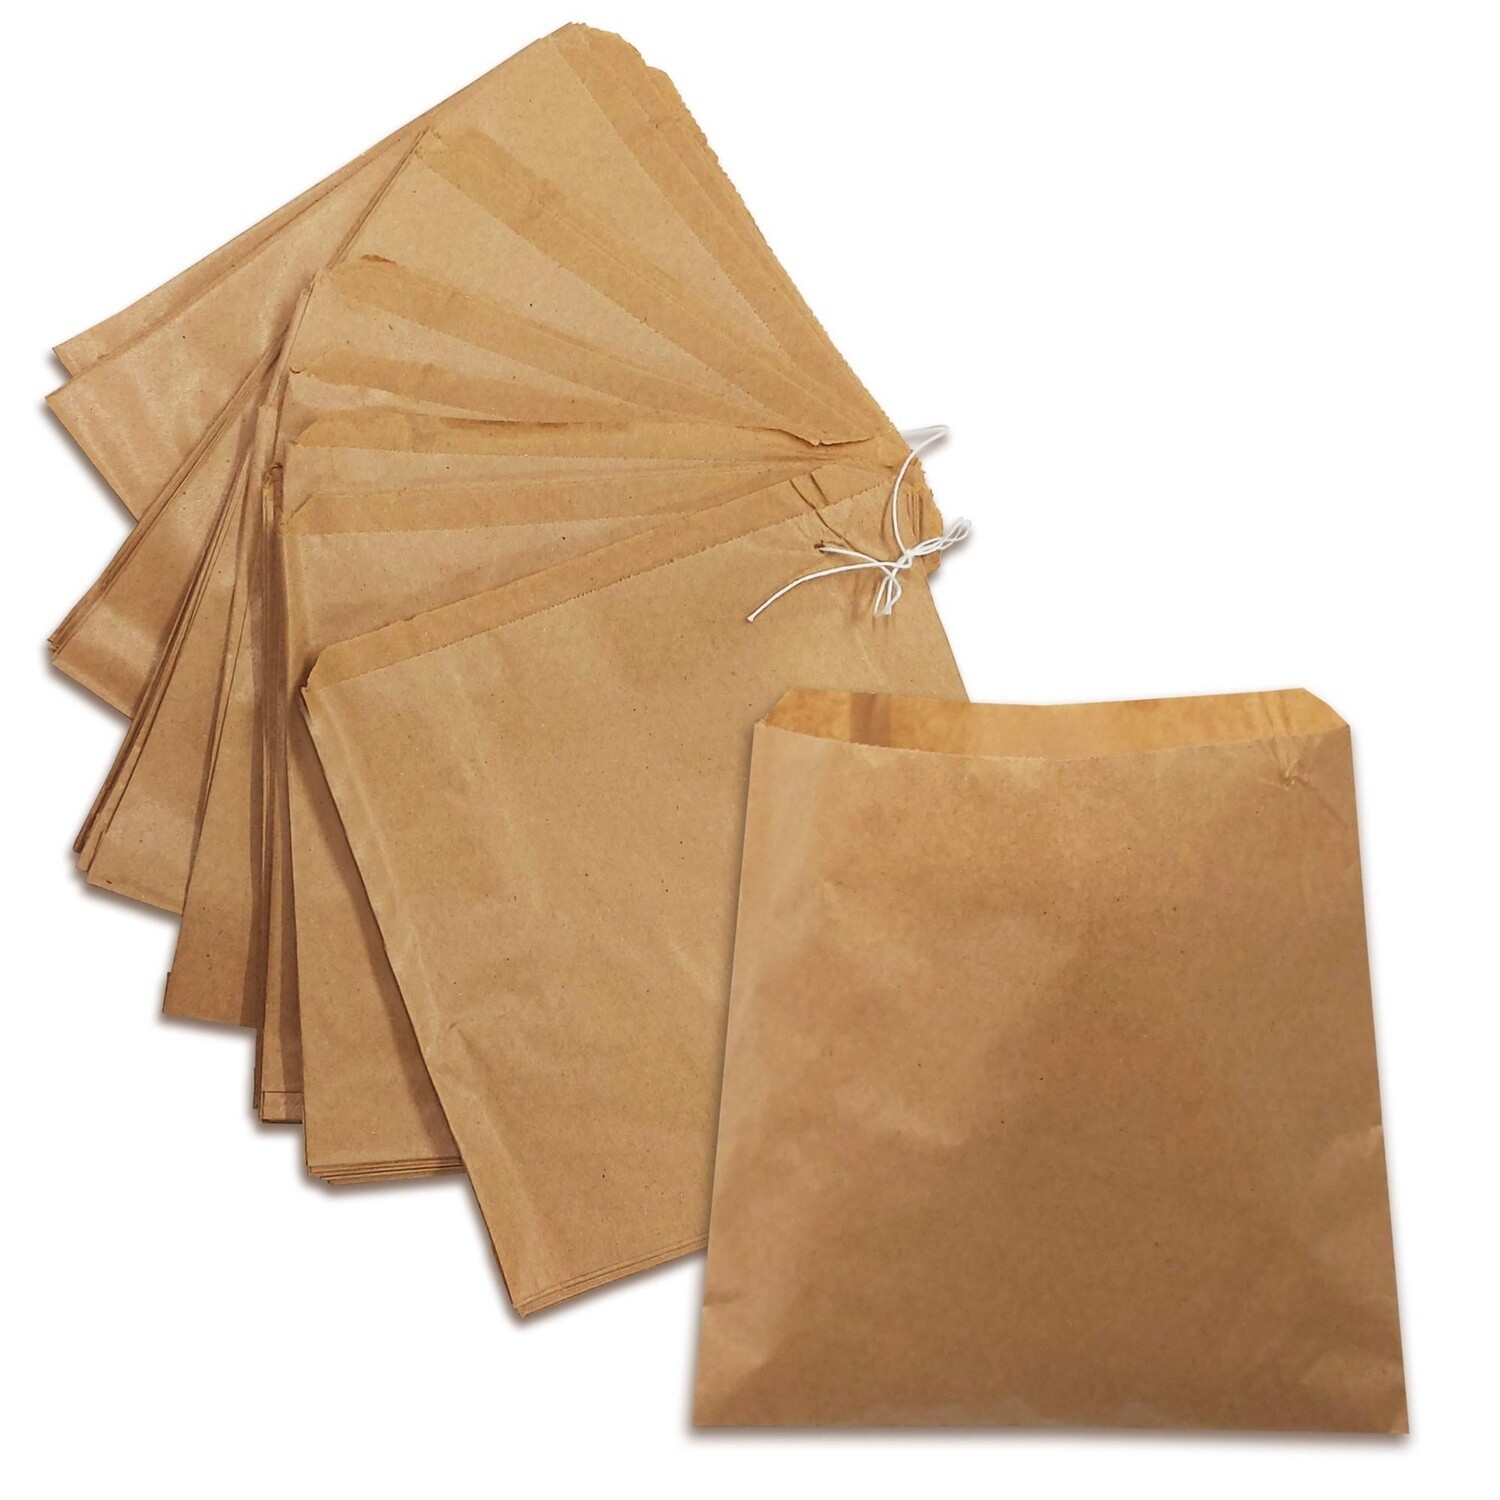 Kraft Brown Paper Bags 8.5x8.5 1000pcs